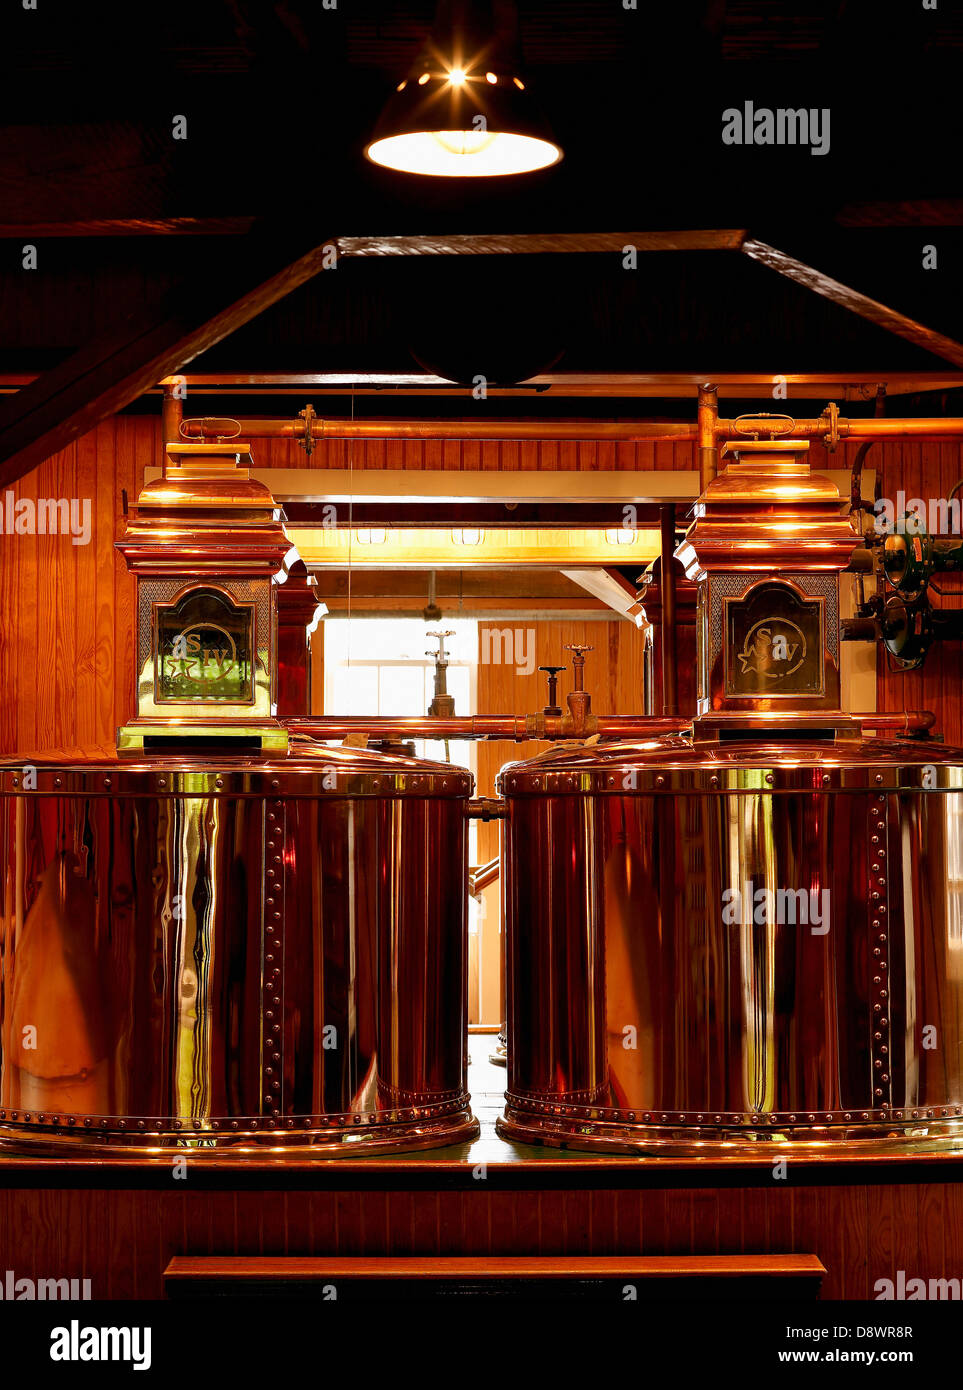 Still for distilling Bourbon at the Maker's Mark Distillery Stock Photo